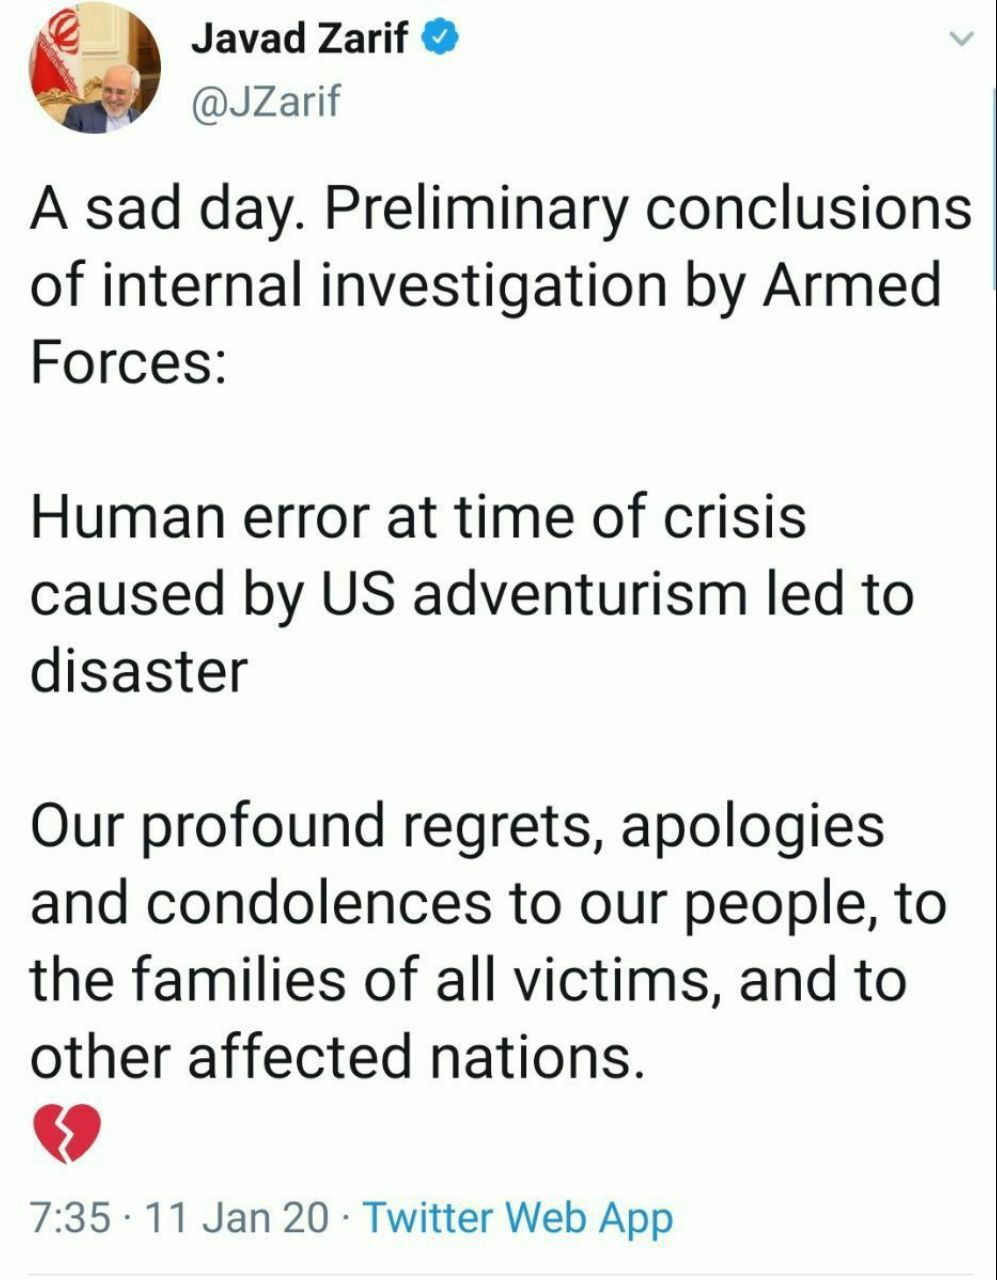 ️ وزیر امور خارجه در توییتى بخاطر خطاى انسانى ناشى از ماجراجویى هاى آمریکا به خانواده هاى قربانیان هواپیماى اوکراینى تسلیت گفت و عذرخواهى کرد.